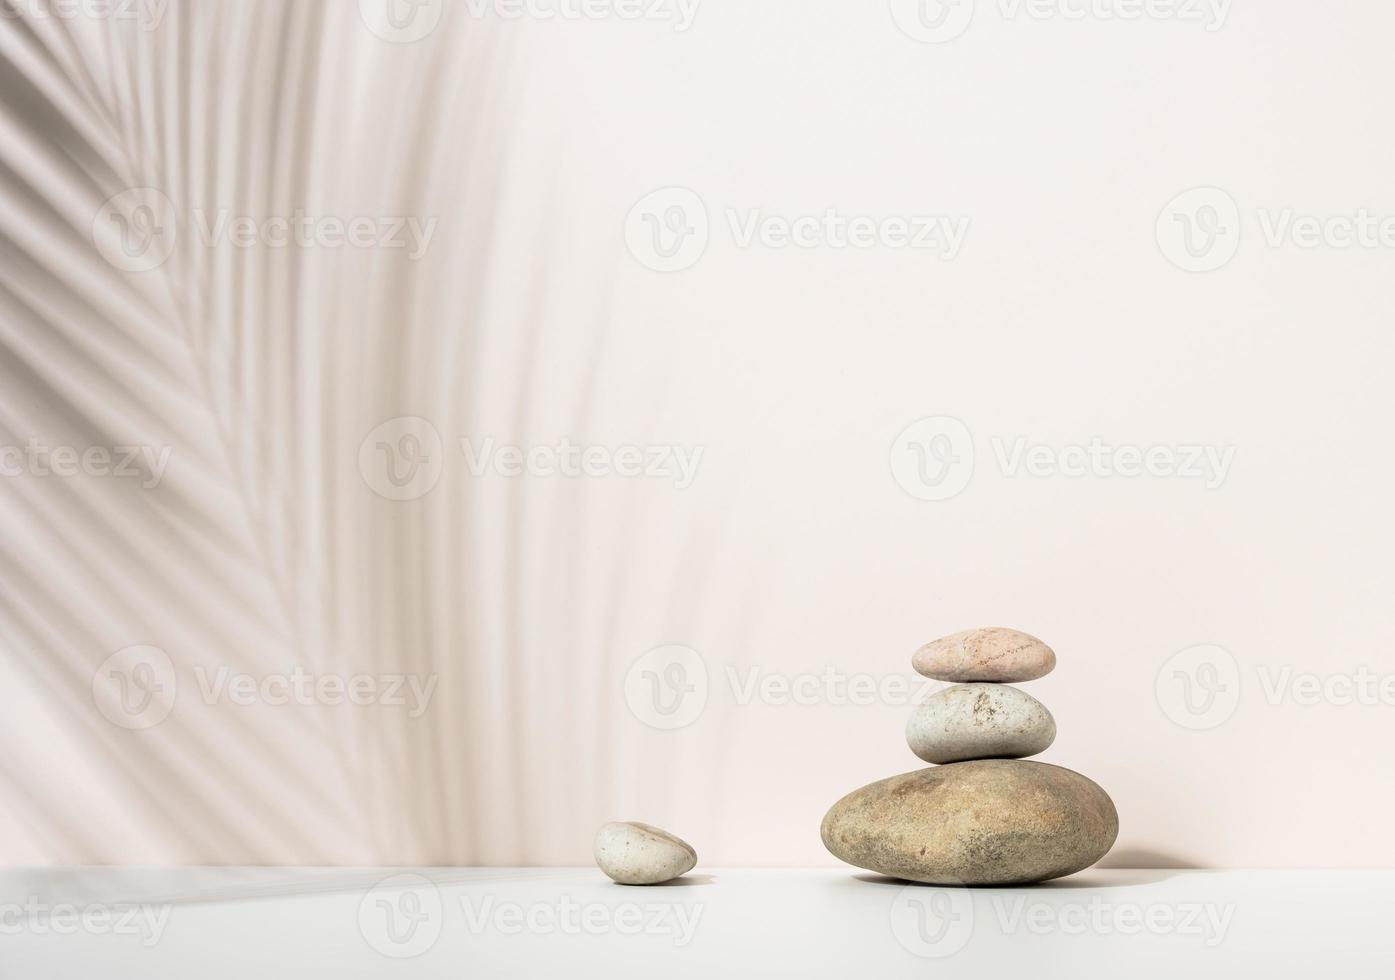 pila de piedras redondas y la sombra de una hoja de palma sobre un fondo beige. escena para la demostración de productos cosméticos, publicidad foto